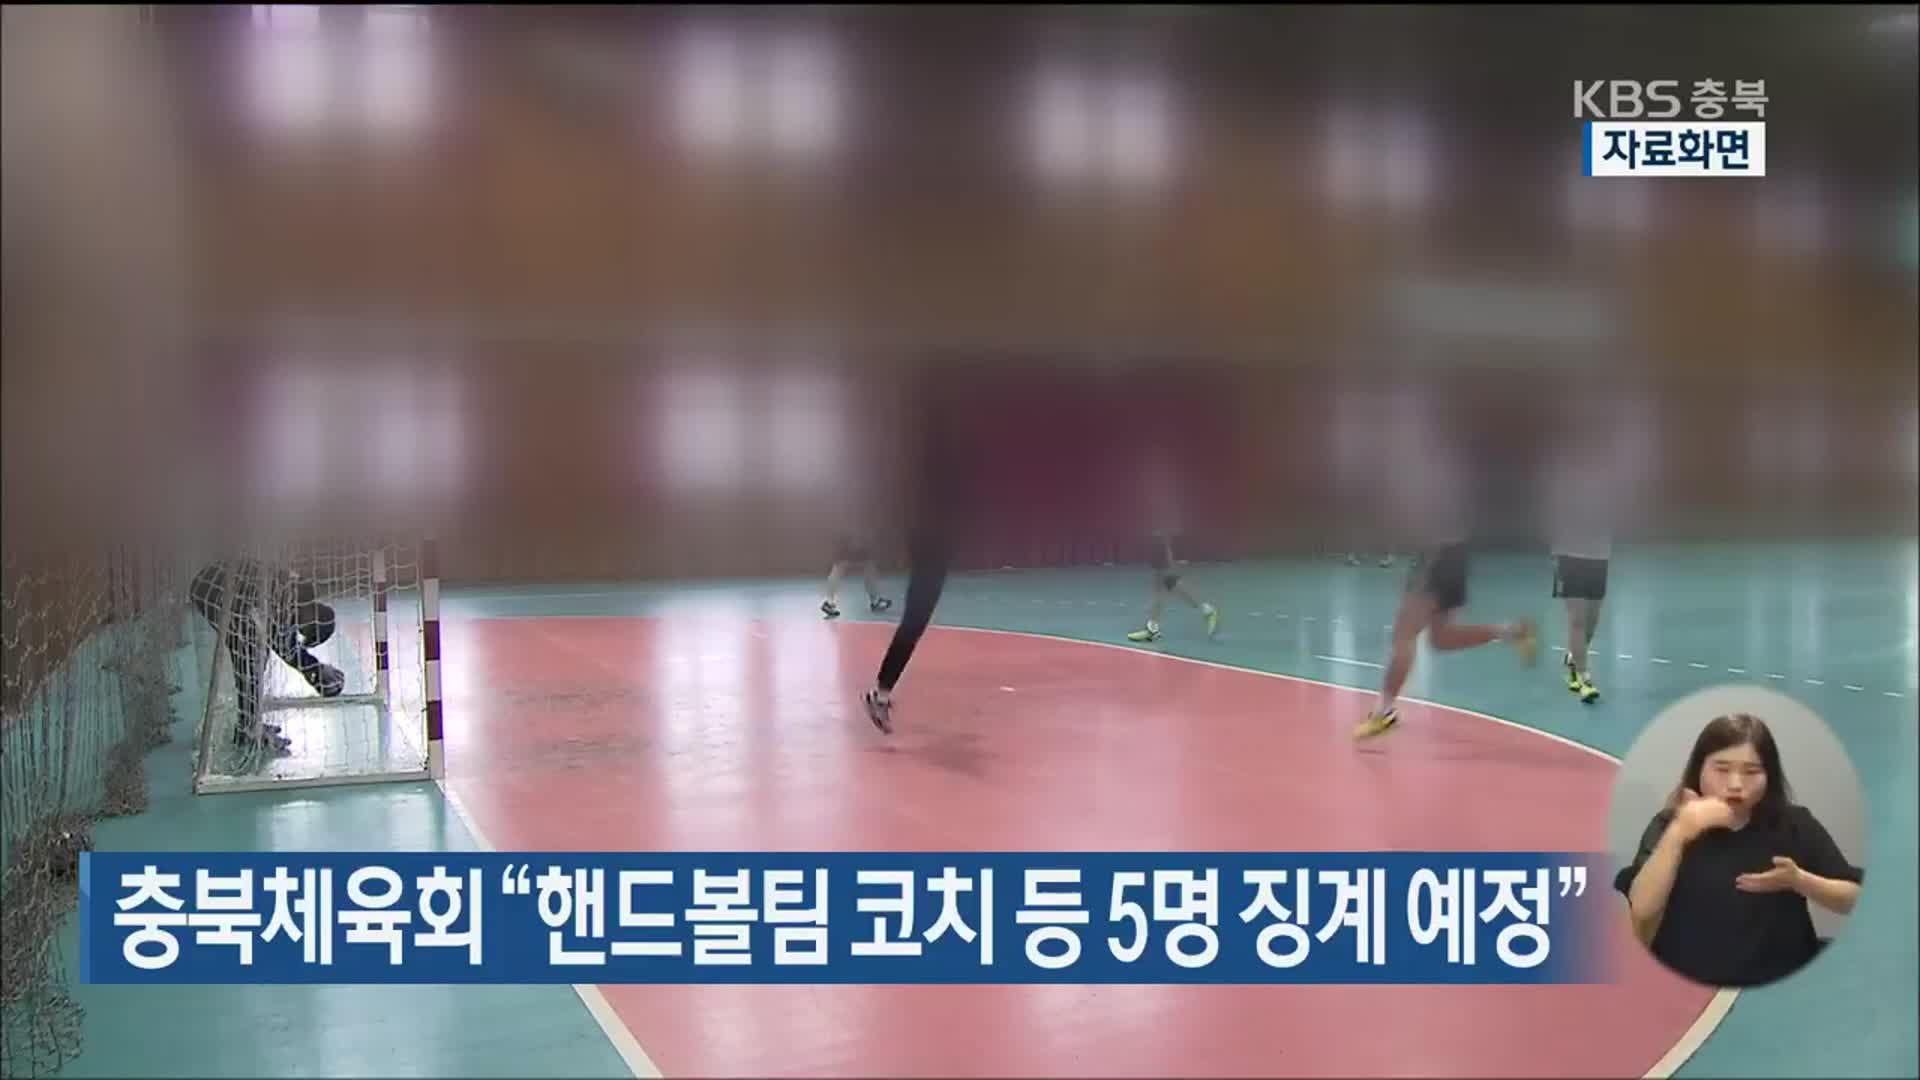 충북체육회 “핸드볼팀 코치 등 5명 징계 예정”